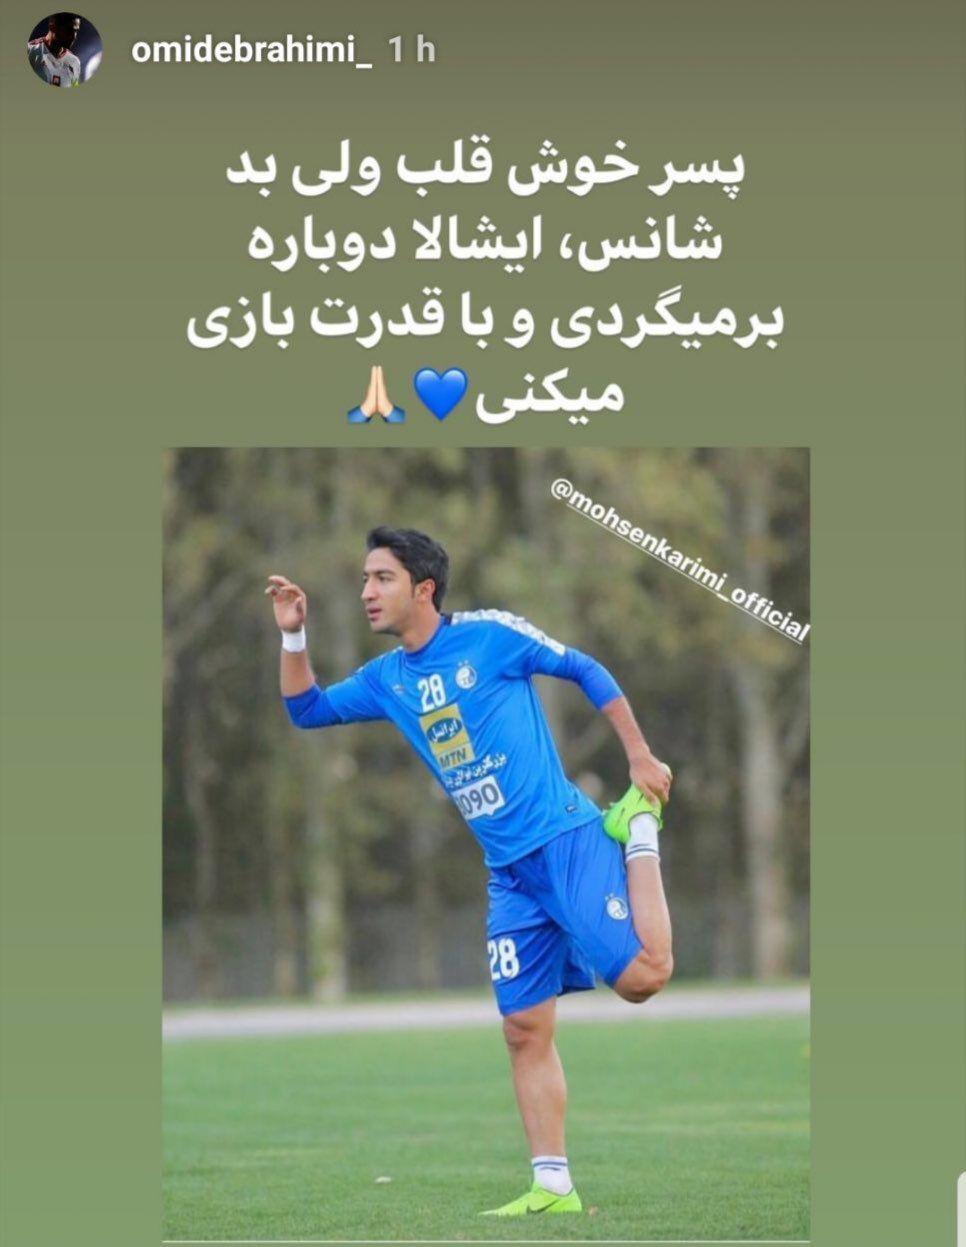 استوری لژیونر فوتبال ایران برای بازیکن معروف + عکس